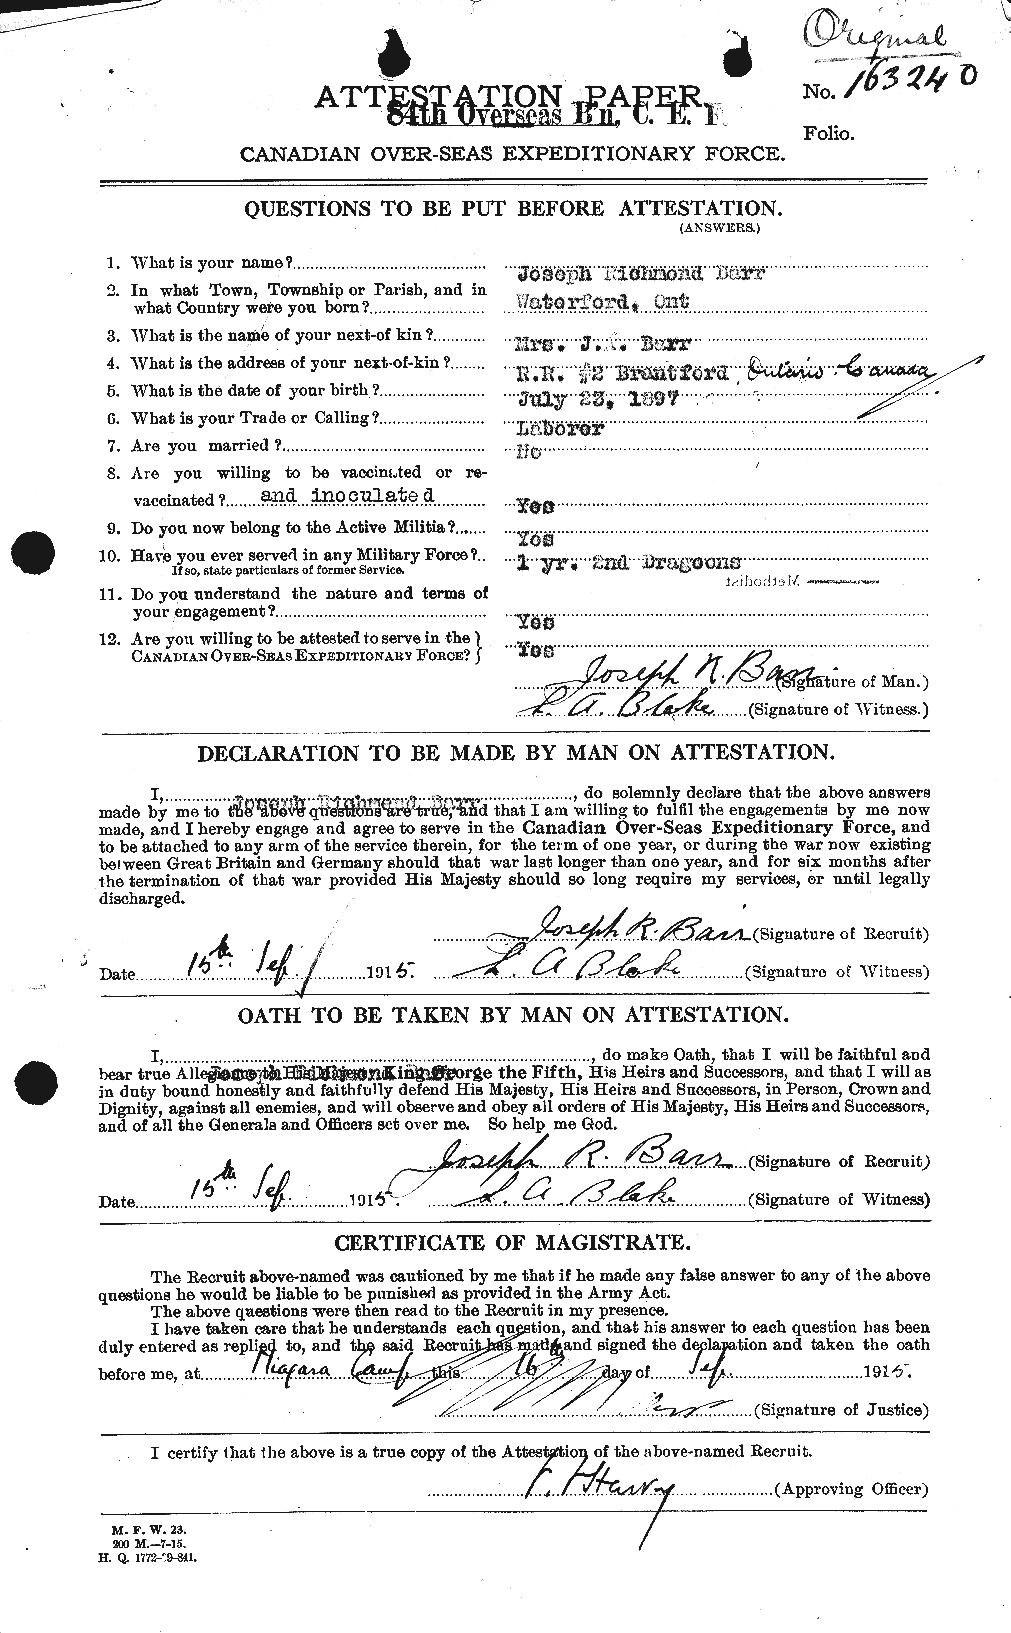 Dossiers du Personnel de la Première Guerre mondiale - CEC 227868a